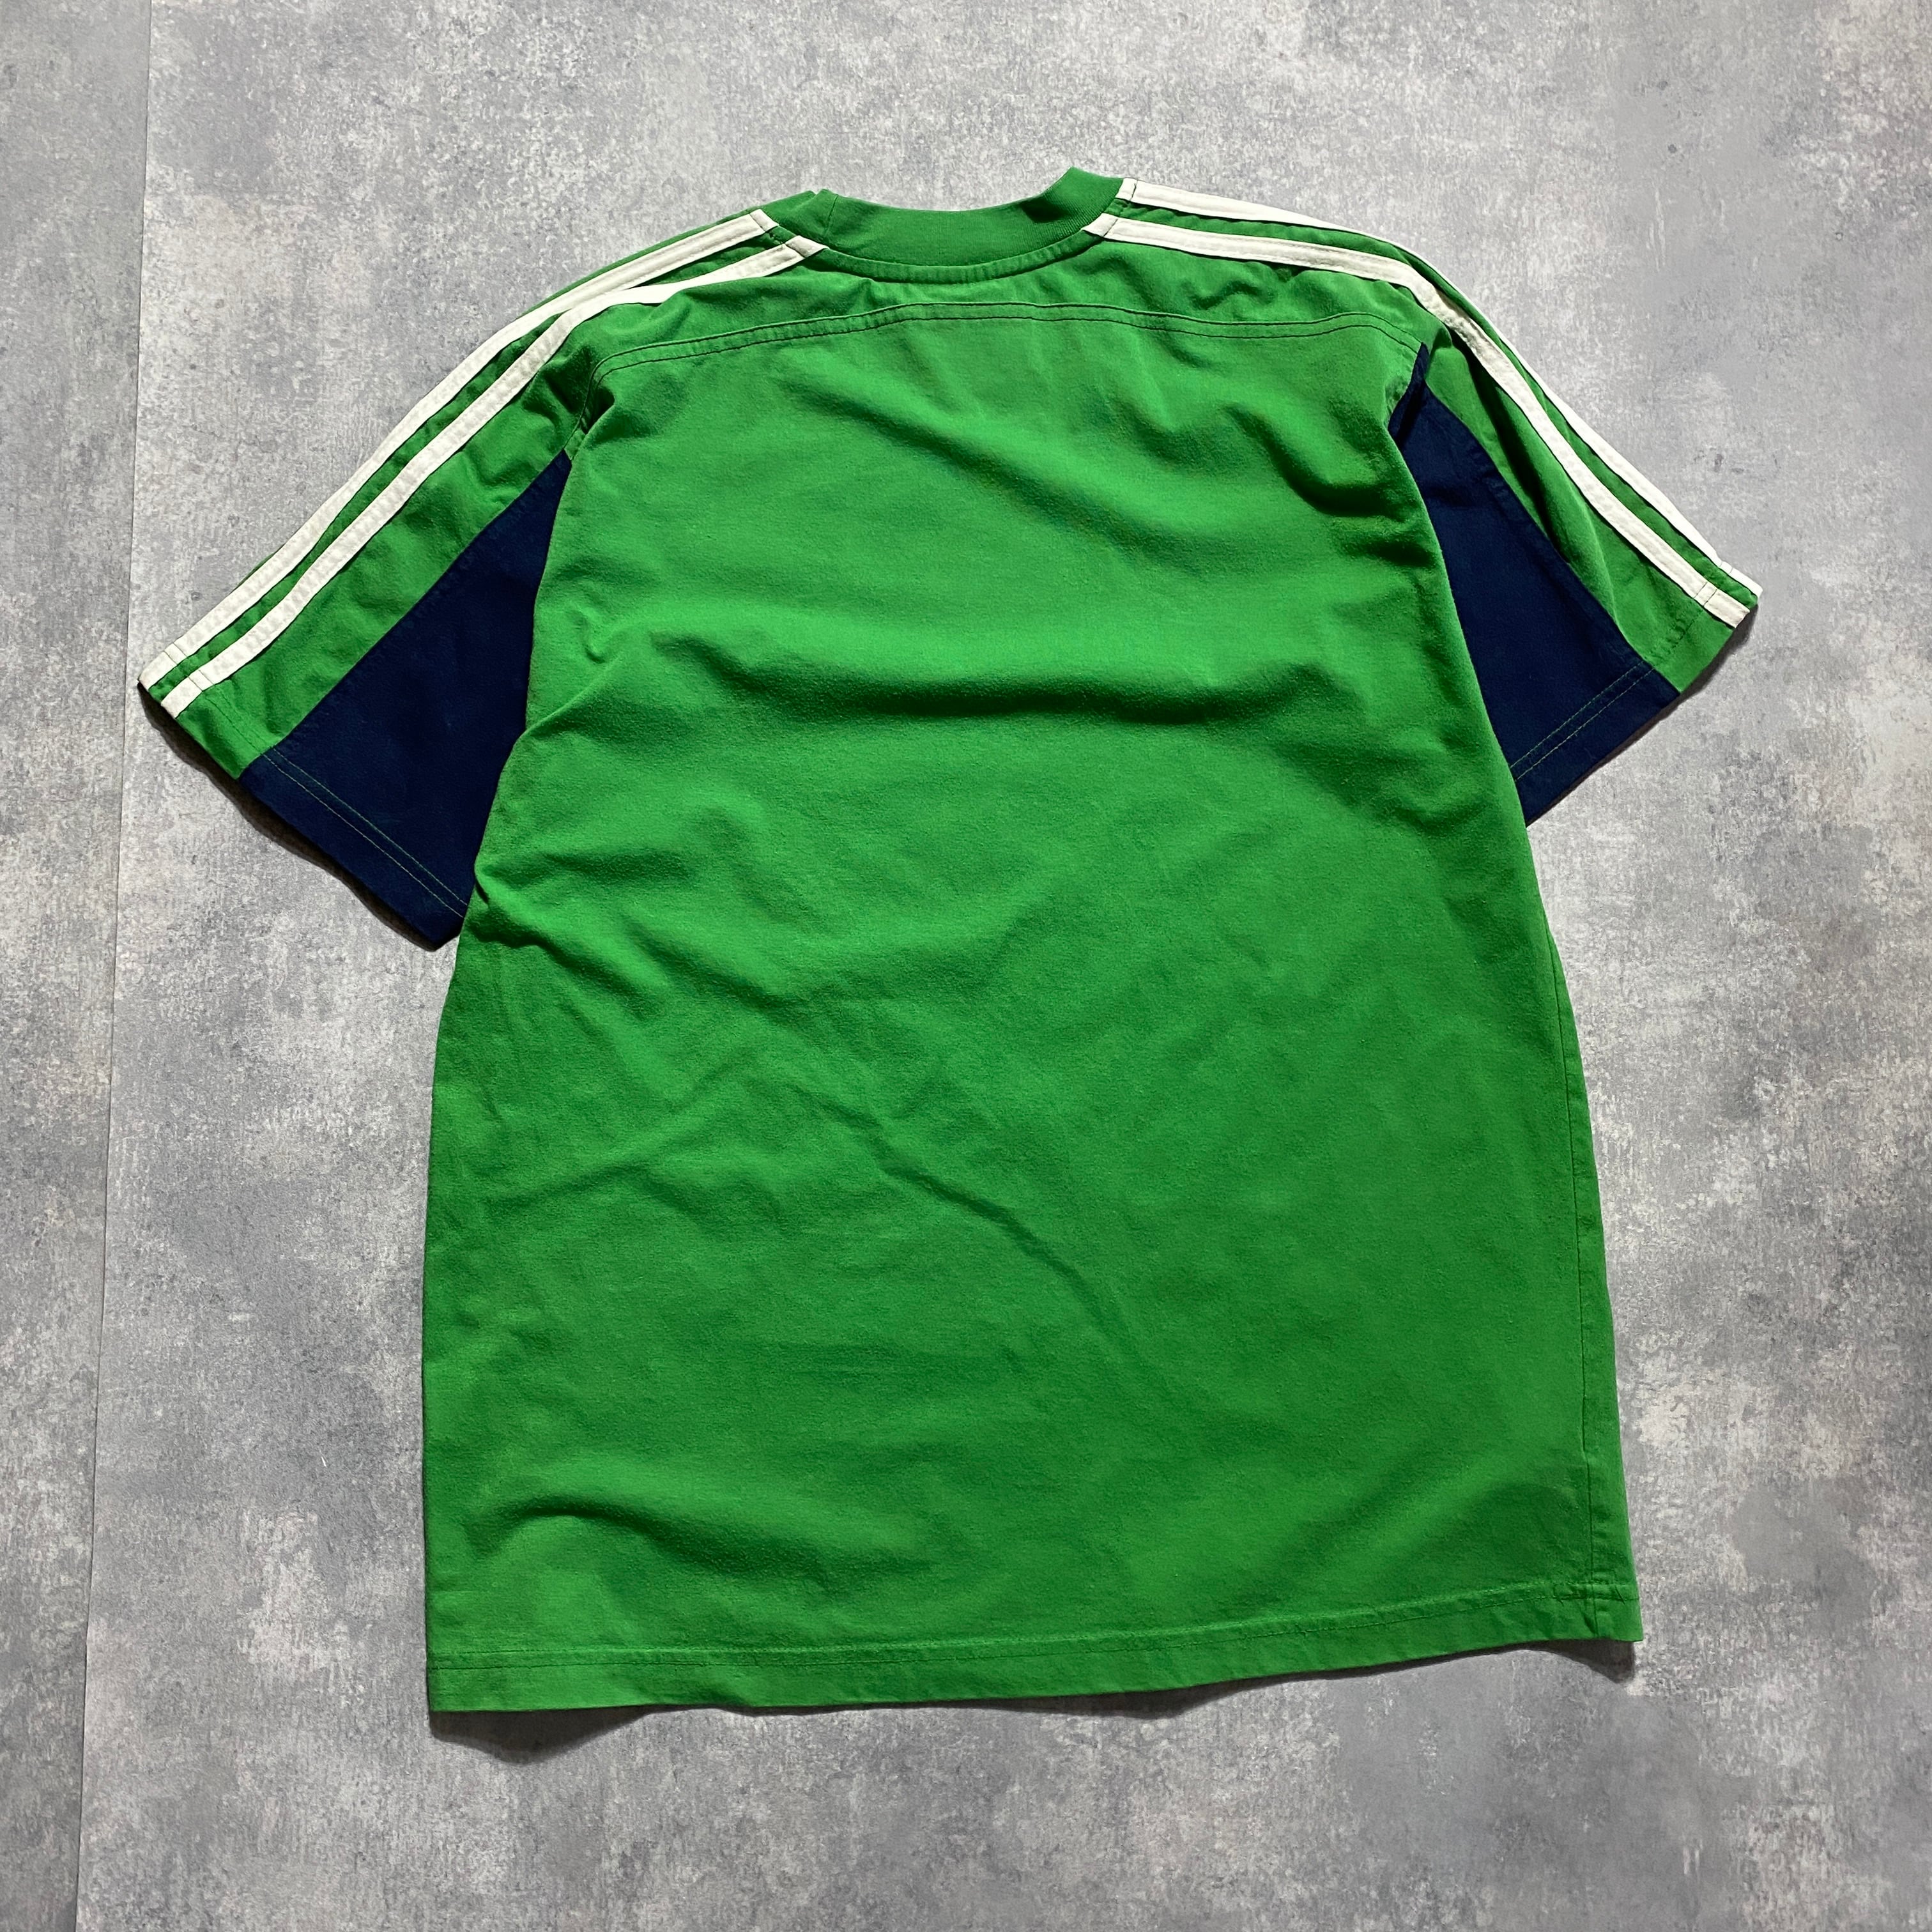 90s アディダス 刺繍ワンポイントロゴ サイドライン グリーン Tシャツ